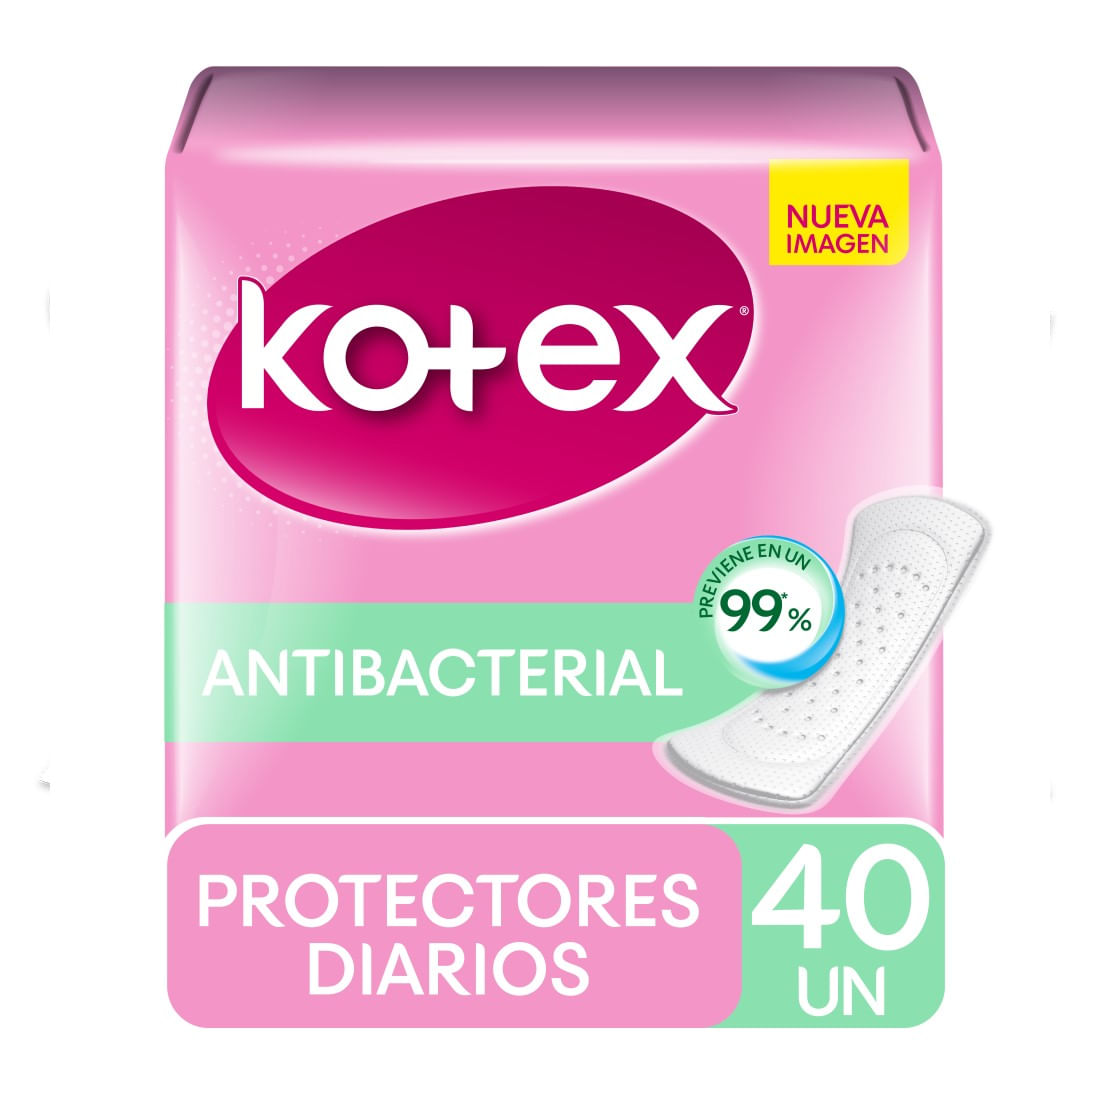 Protector diario Kotex antibacteriales 40 un